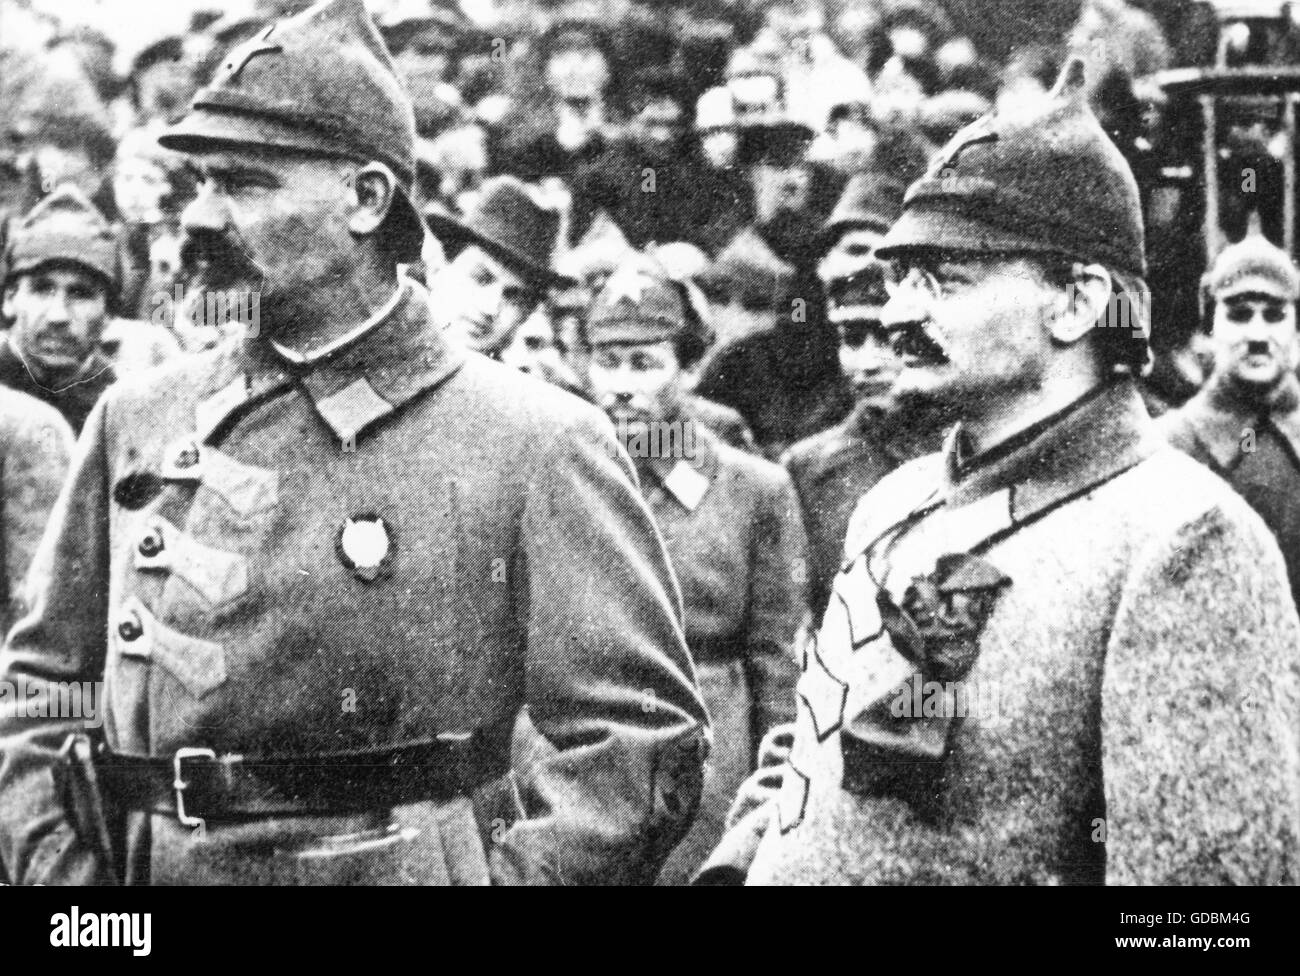 Trotsky, Leo, 7.11.1879 - 21.8.1940, politico sovietico, a metà lunghezza, con il generale Nikolai Ivanovich Muralov, in occasione di un incontro sportivo, Mosca, 1923, Foto Stock